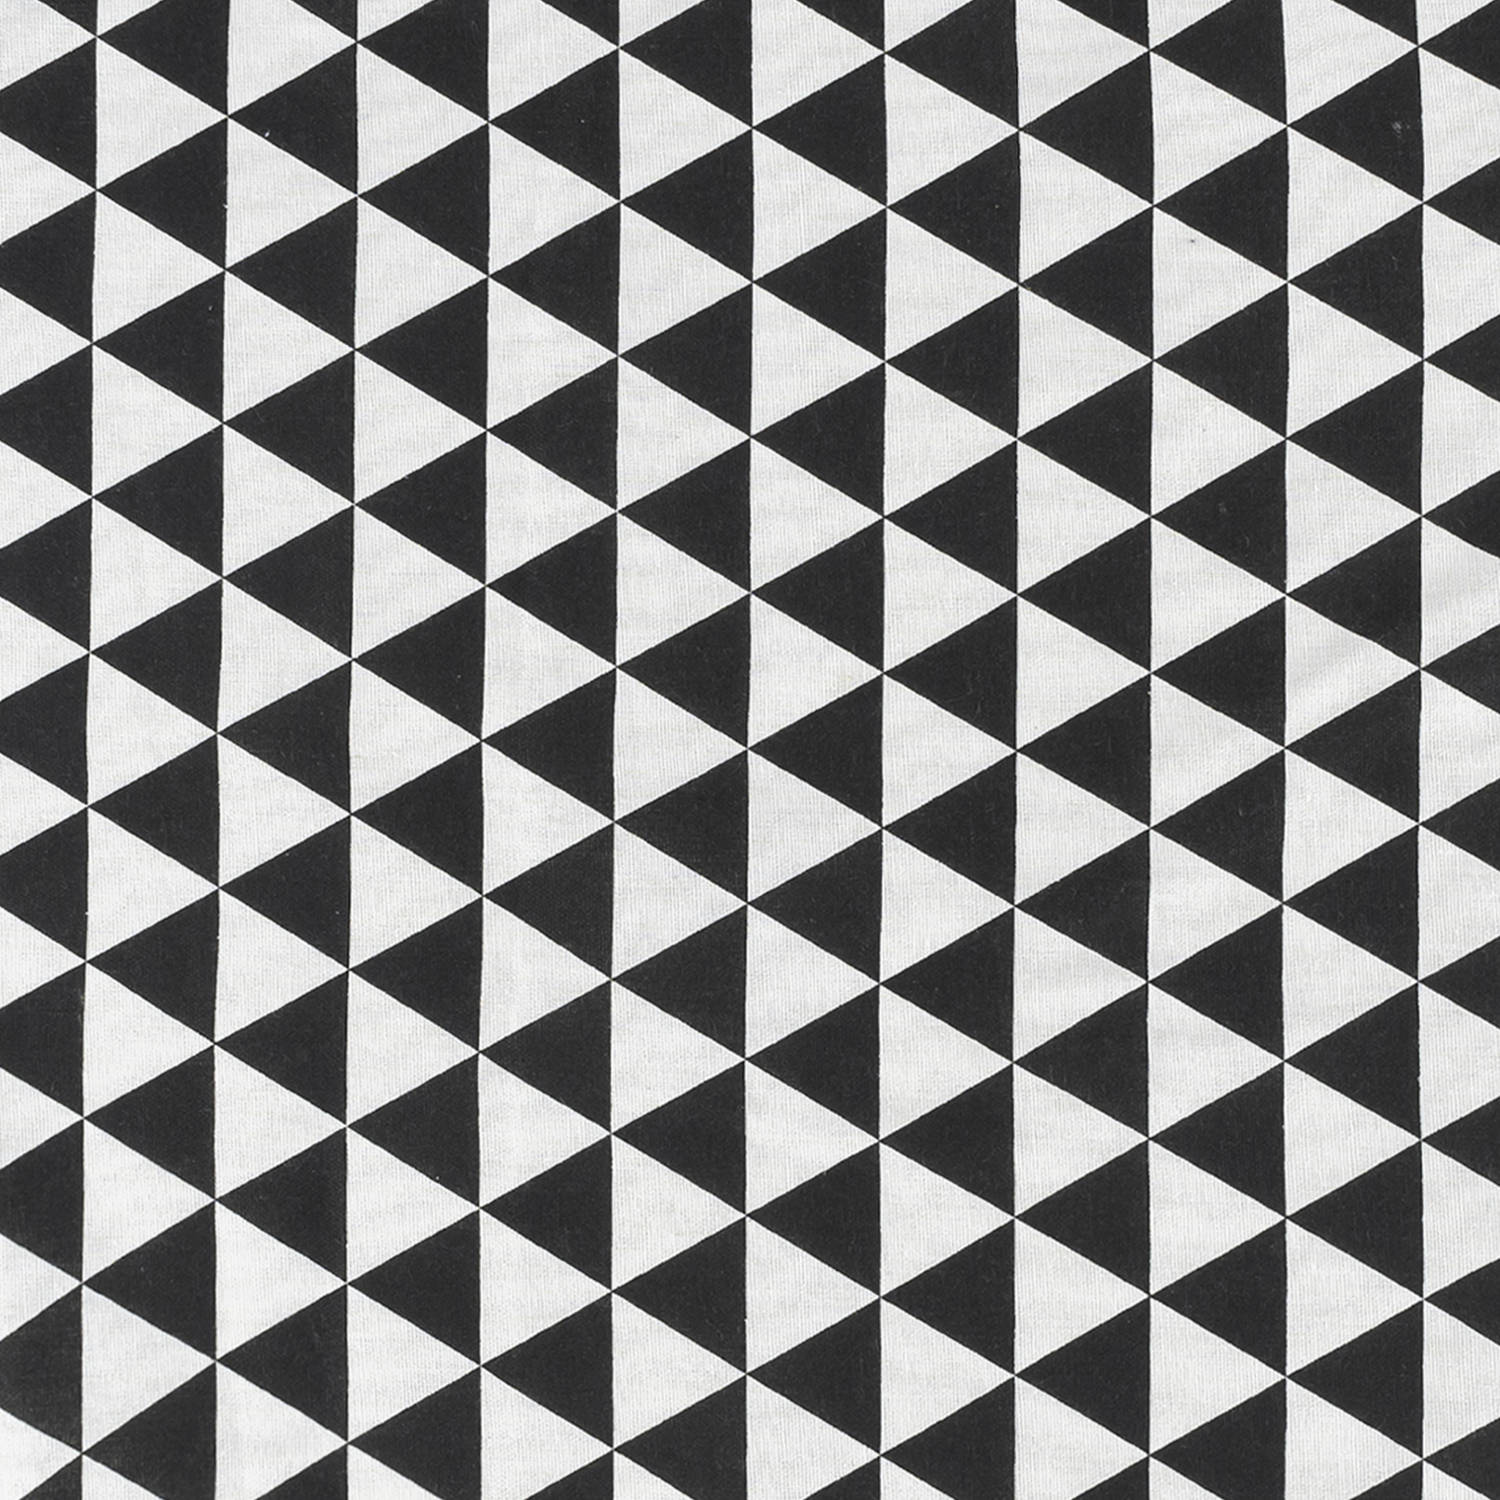 Krumble Theedoek Driehoek patroon 60 40 cm Katoen - Zwart/wit | Blokker